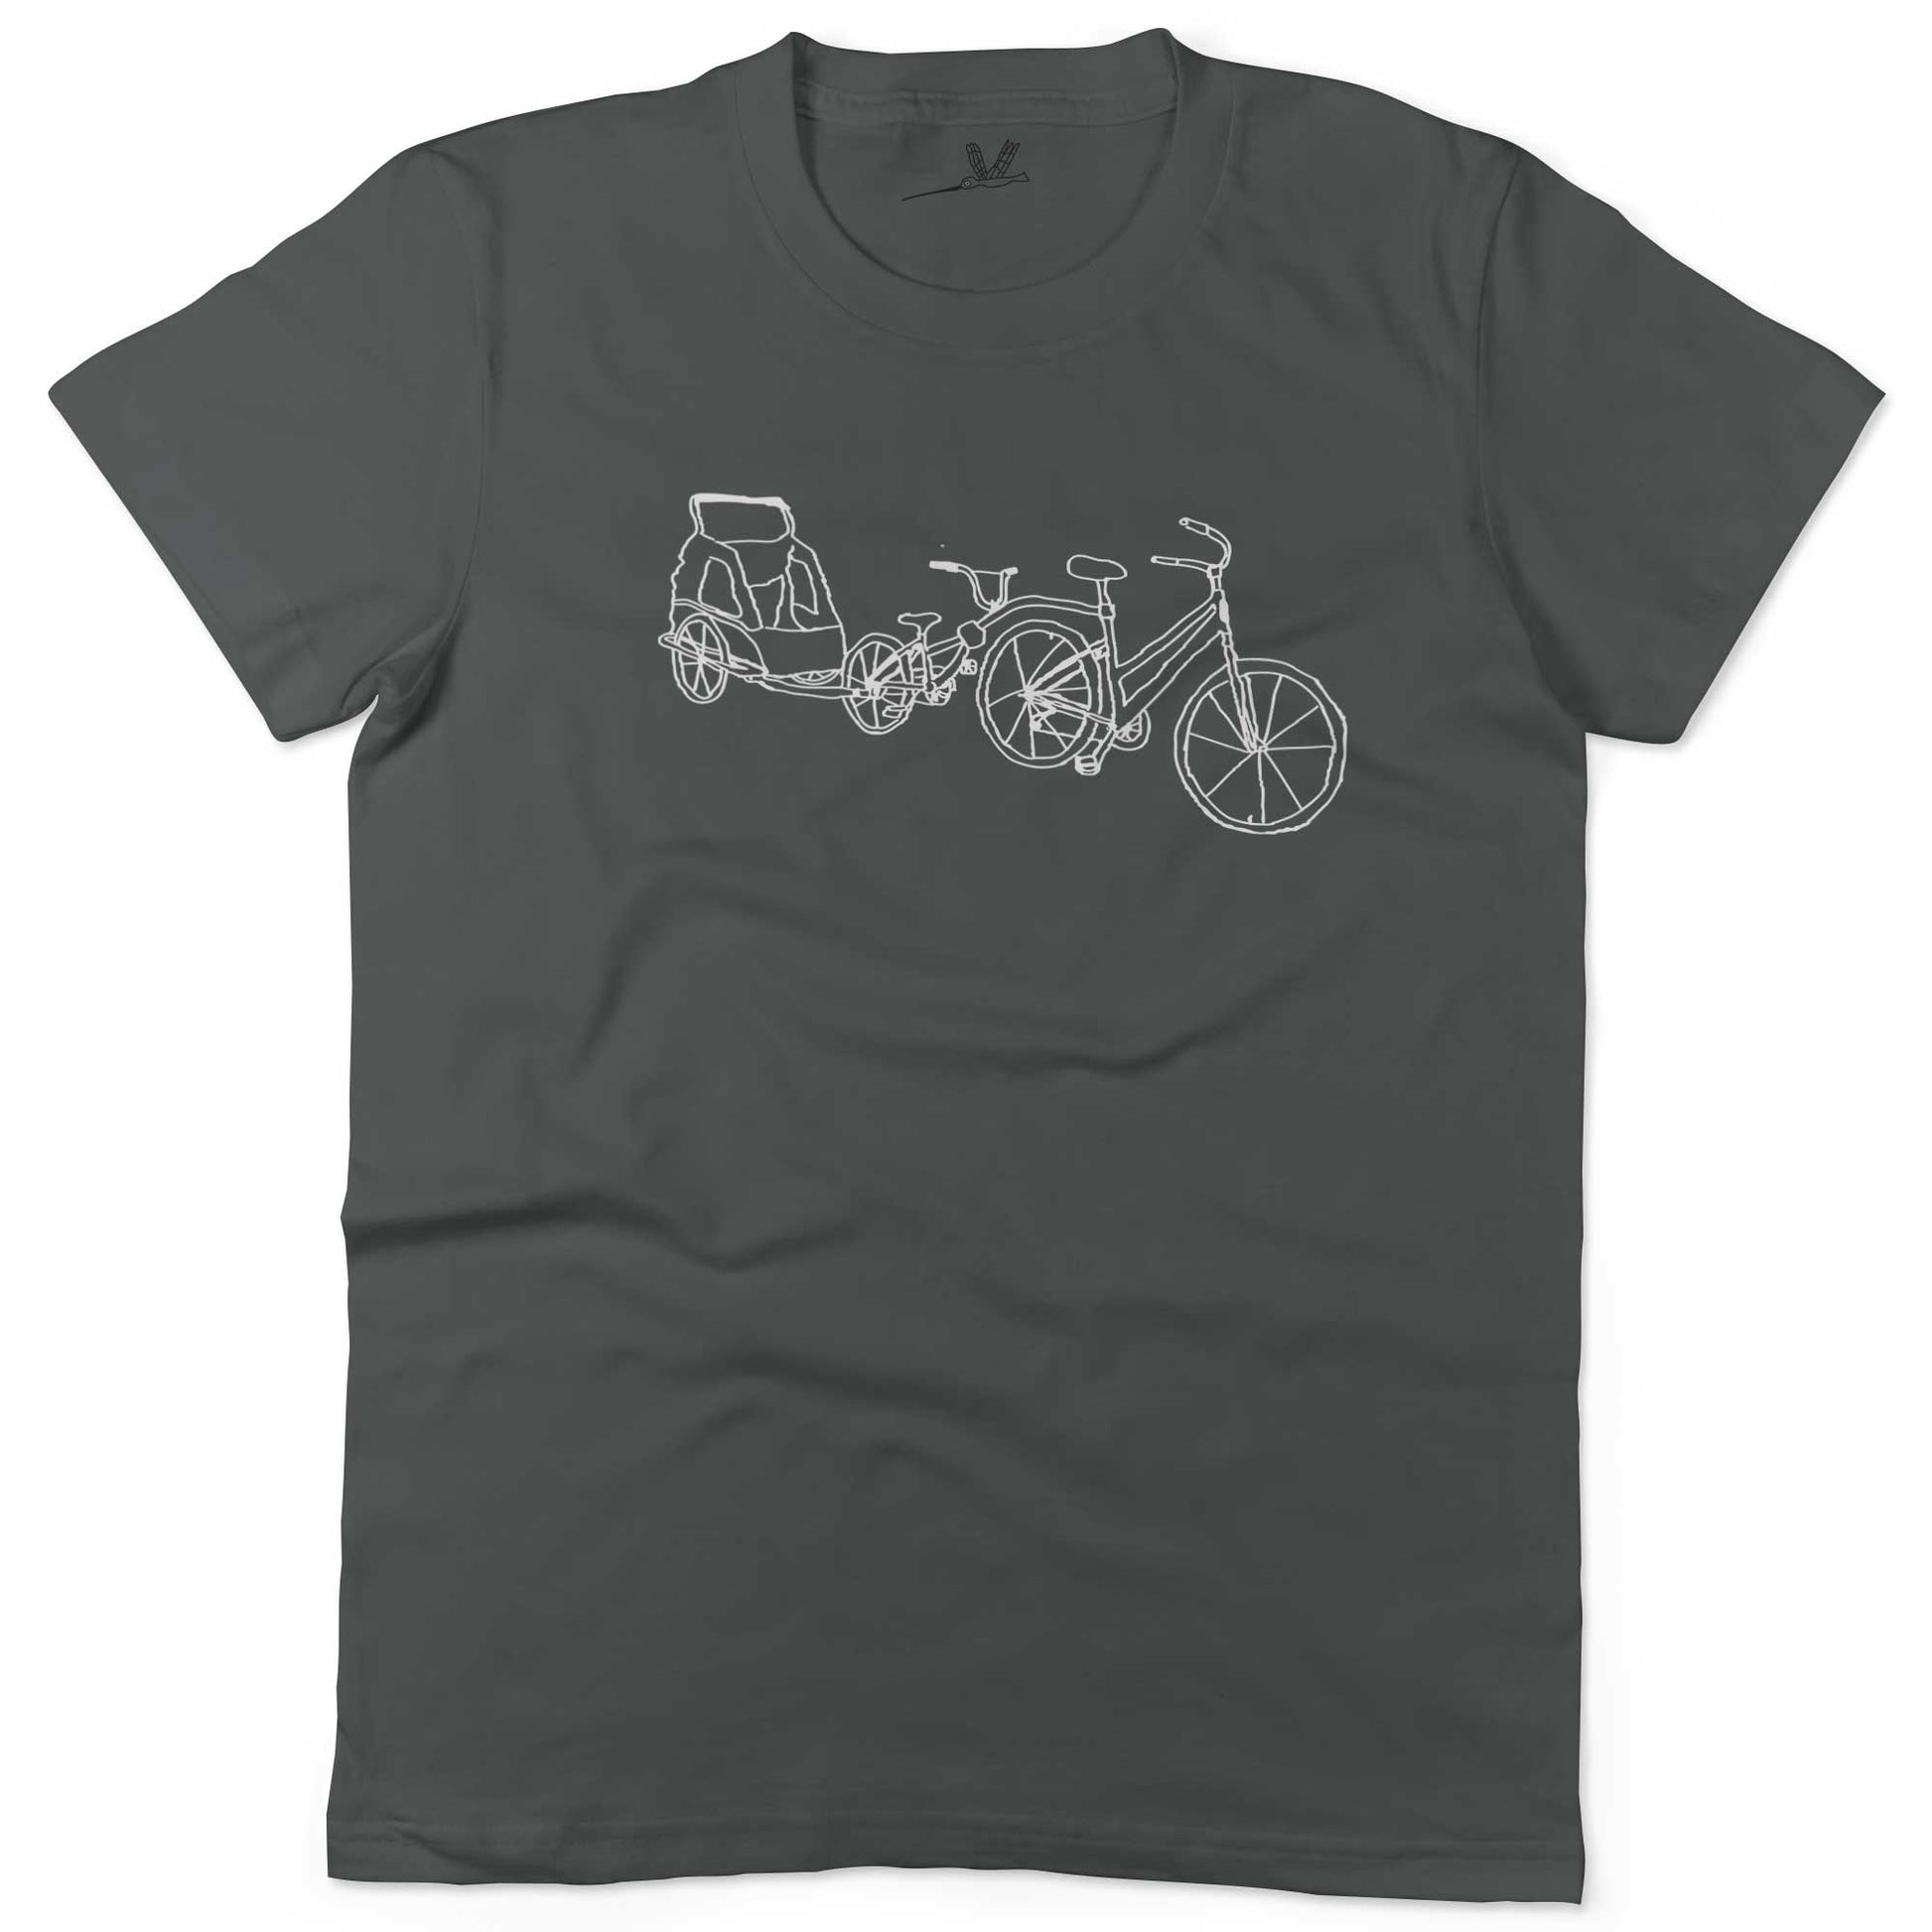 Family Bike Caravan Unisex Or Women's Cotton T-shirt-Asphalt-Woman